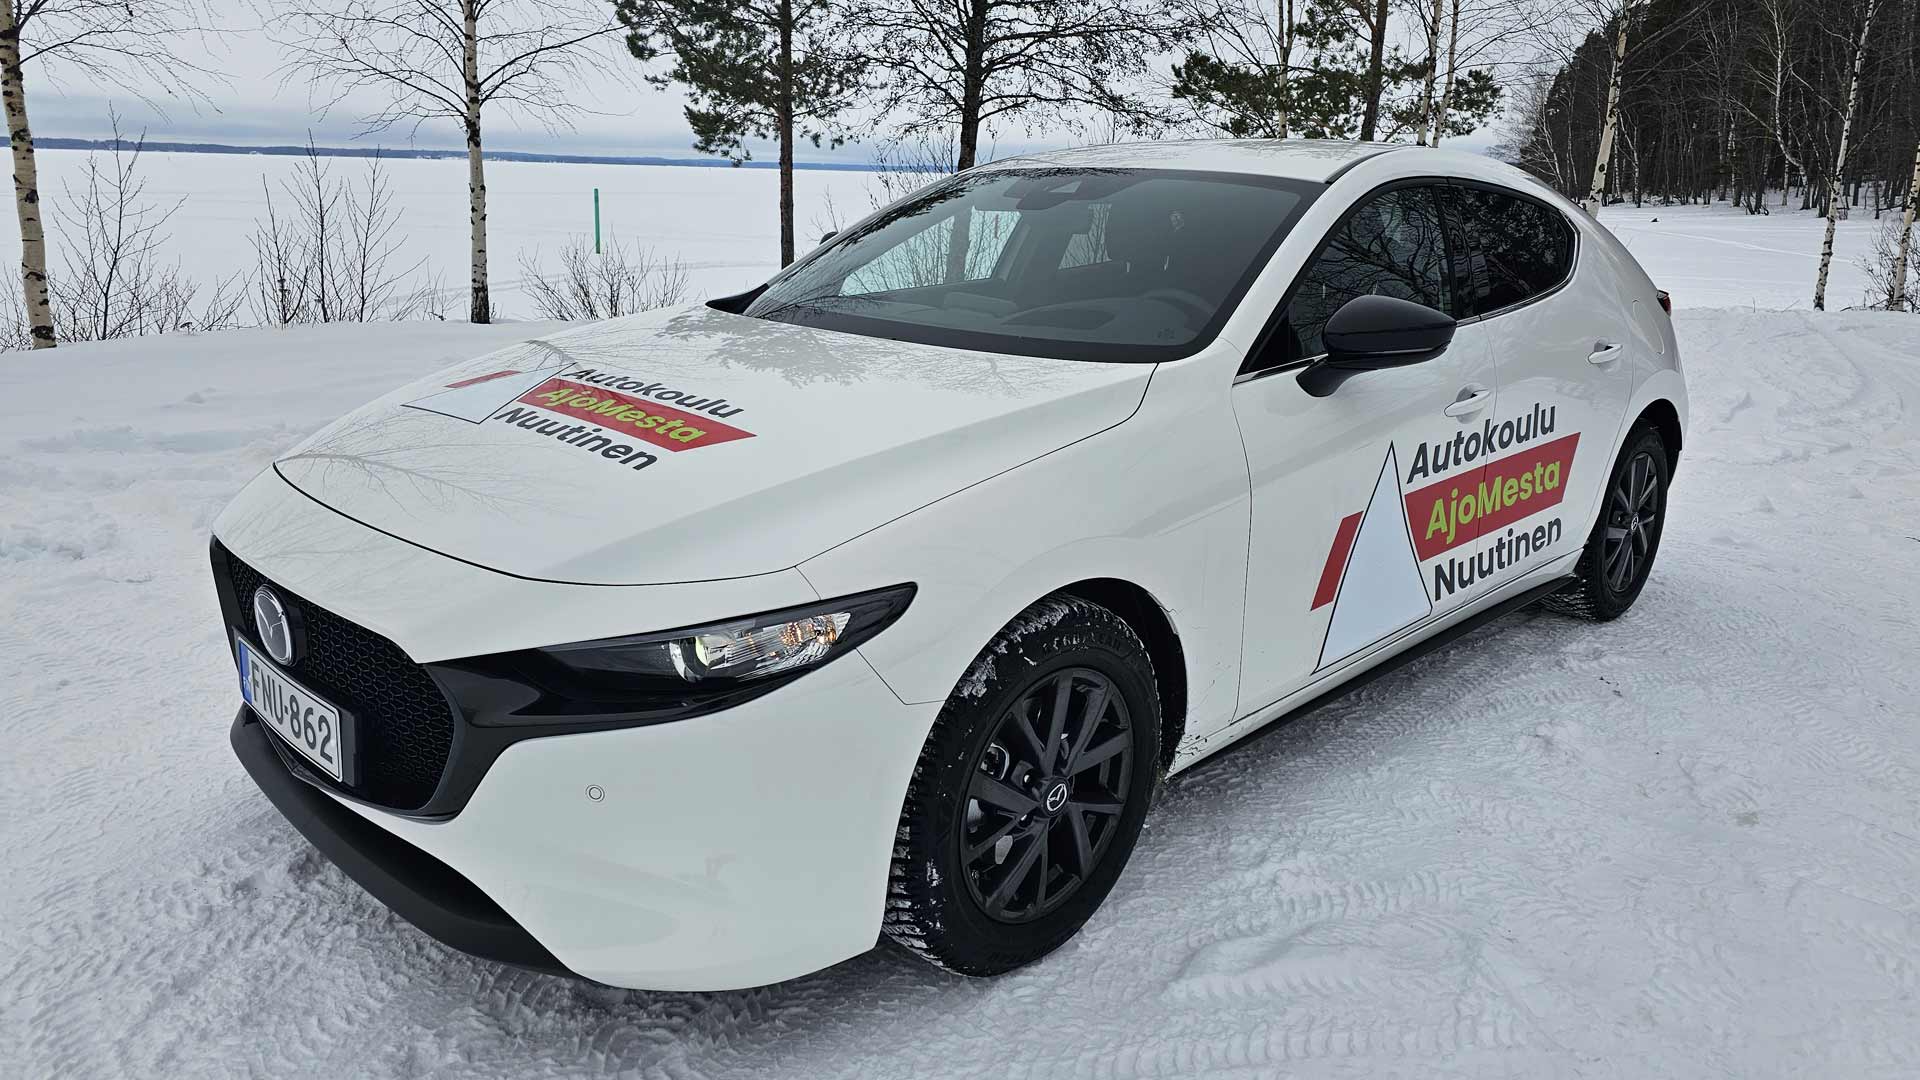 Autokoulu AjoMesta Nuutisen uudet autokouluautot 2023